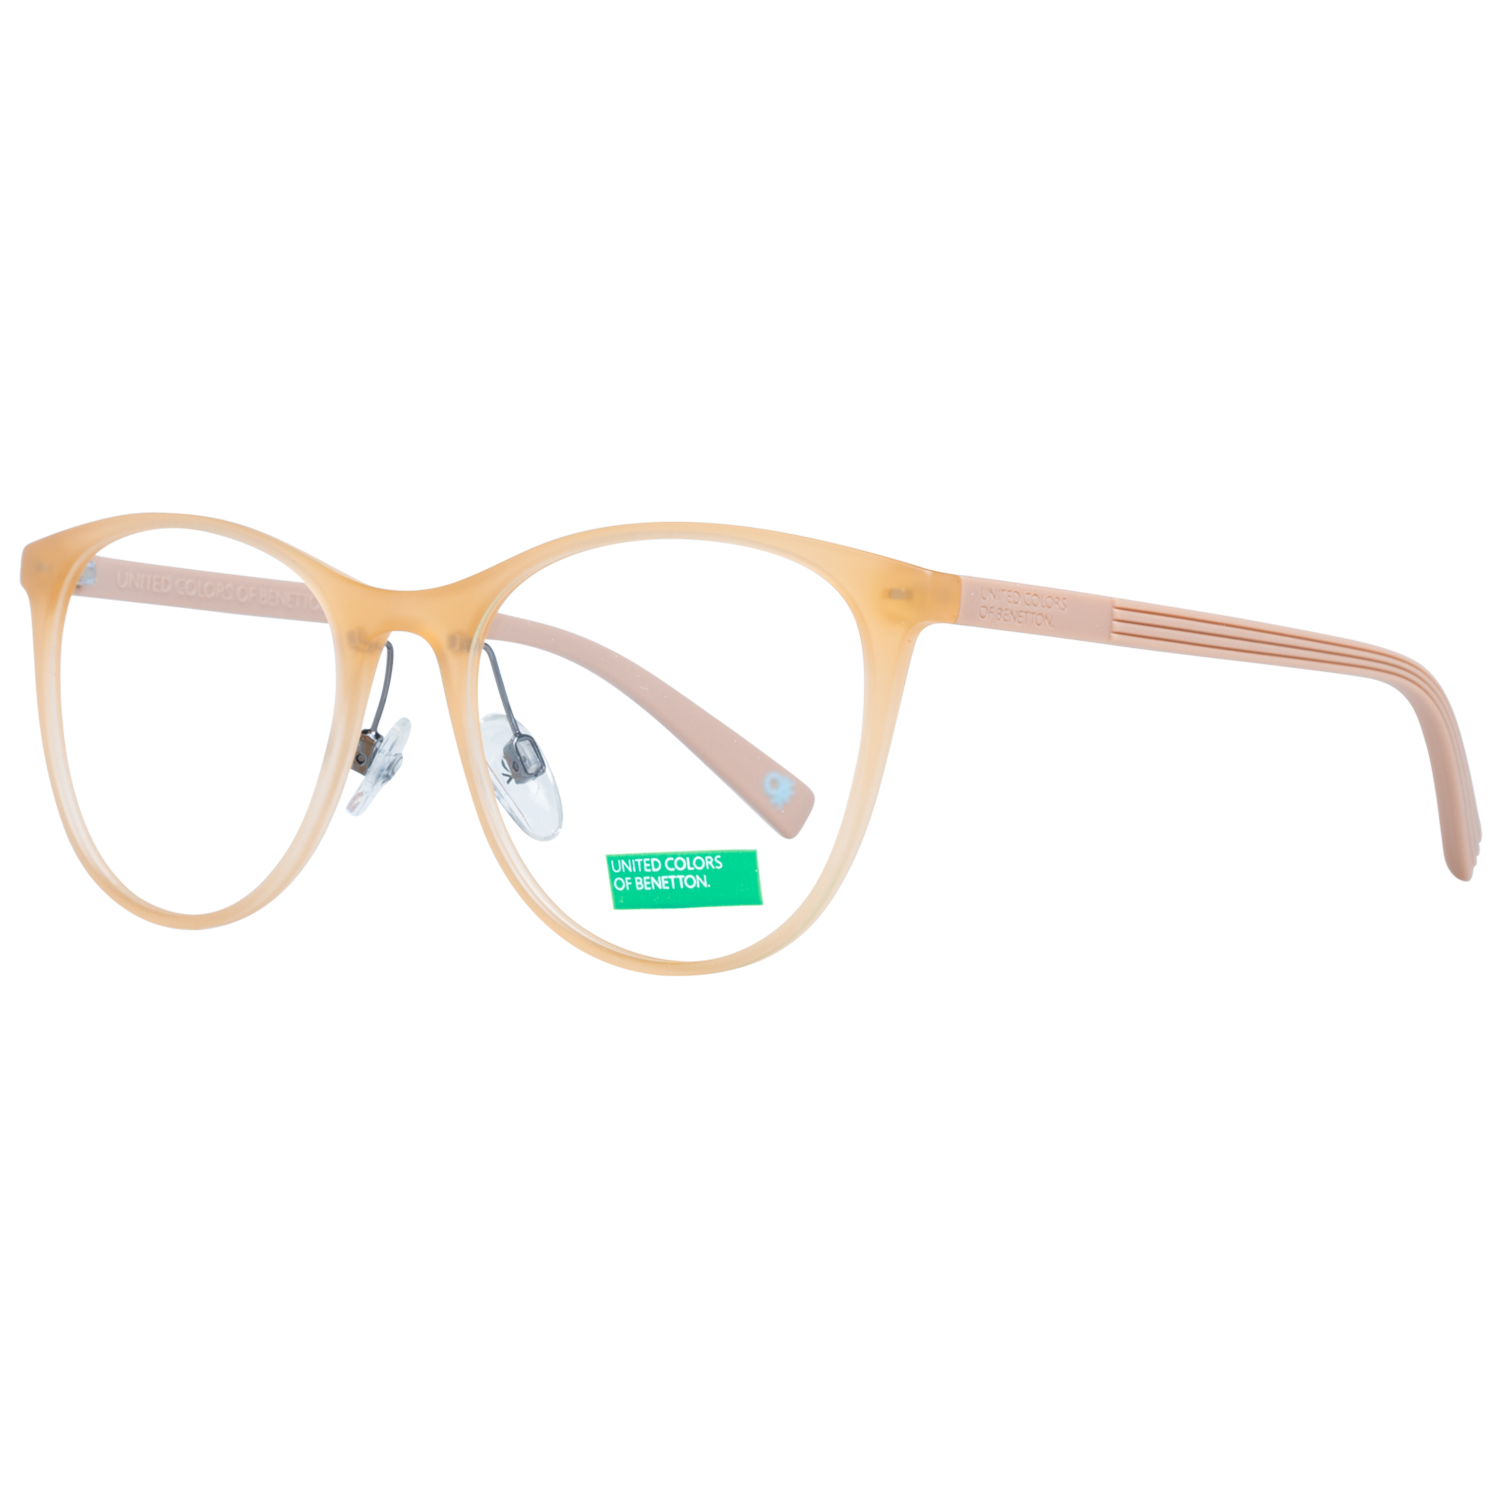 Benetton Frames Benetton Glasses Frames BEO1012 122 51 Eyeglasses Eyewear UK USA Australia 